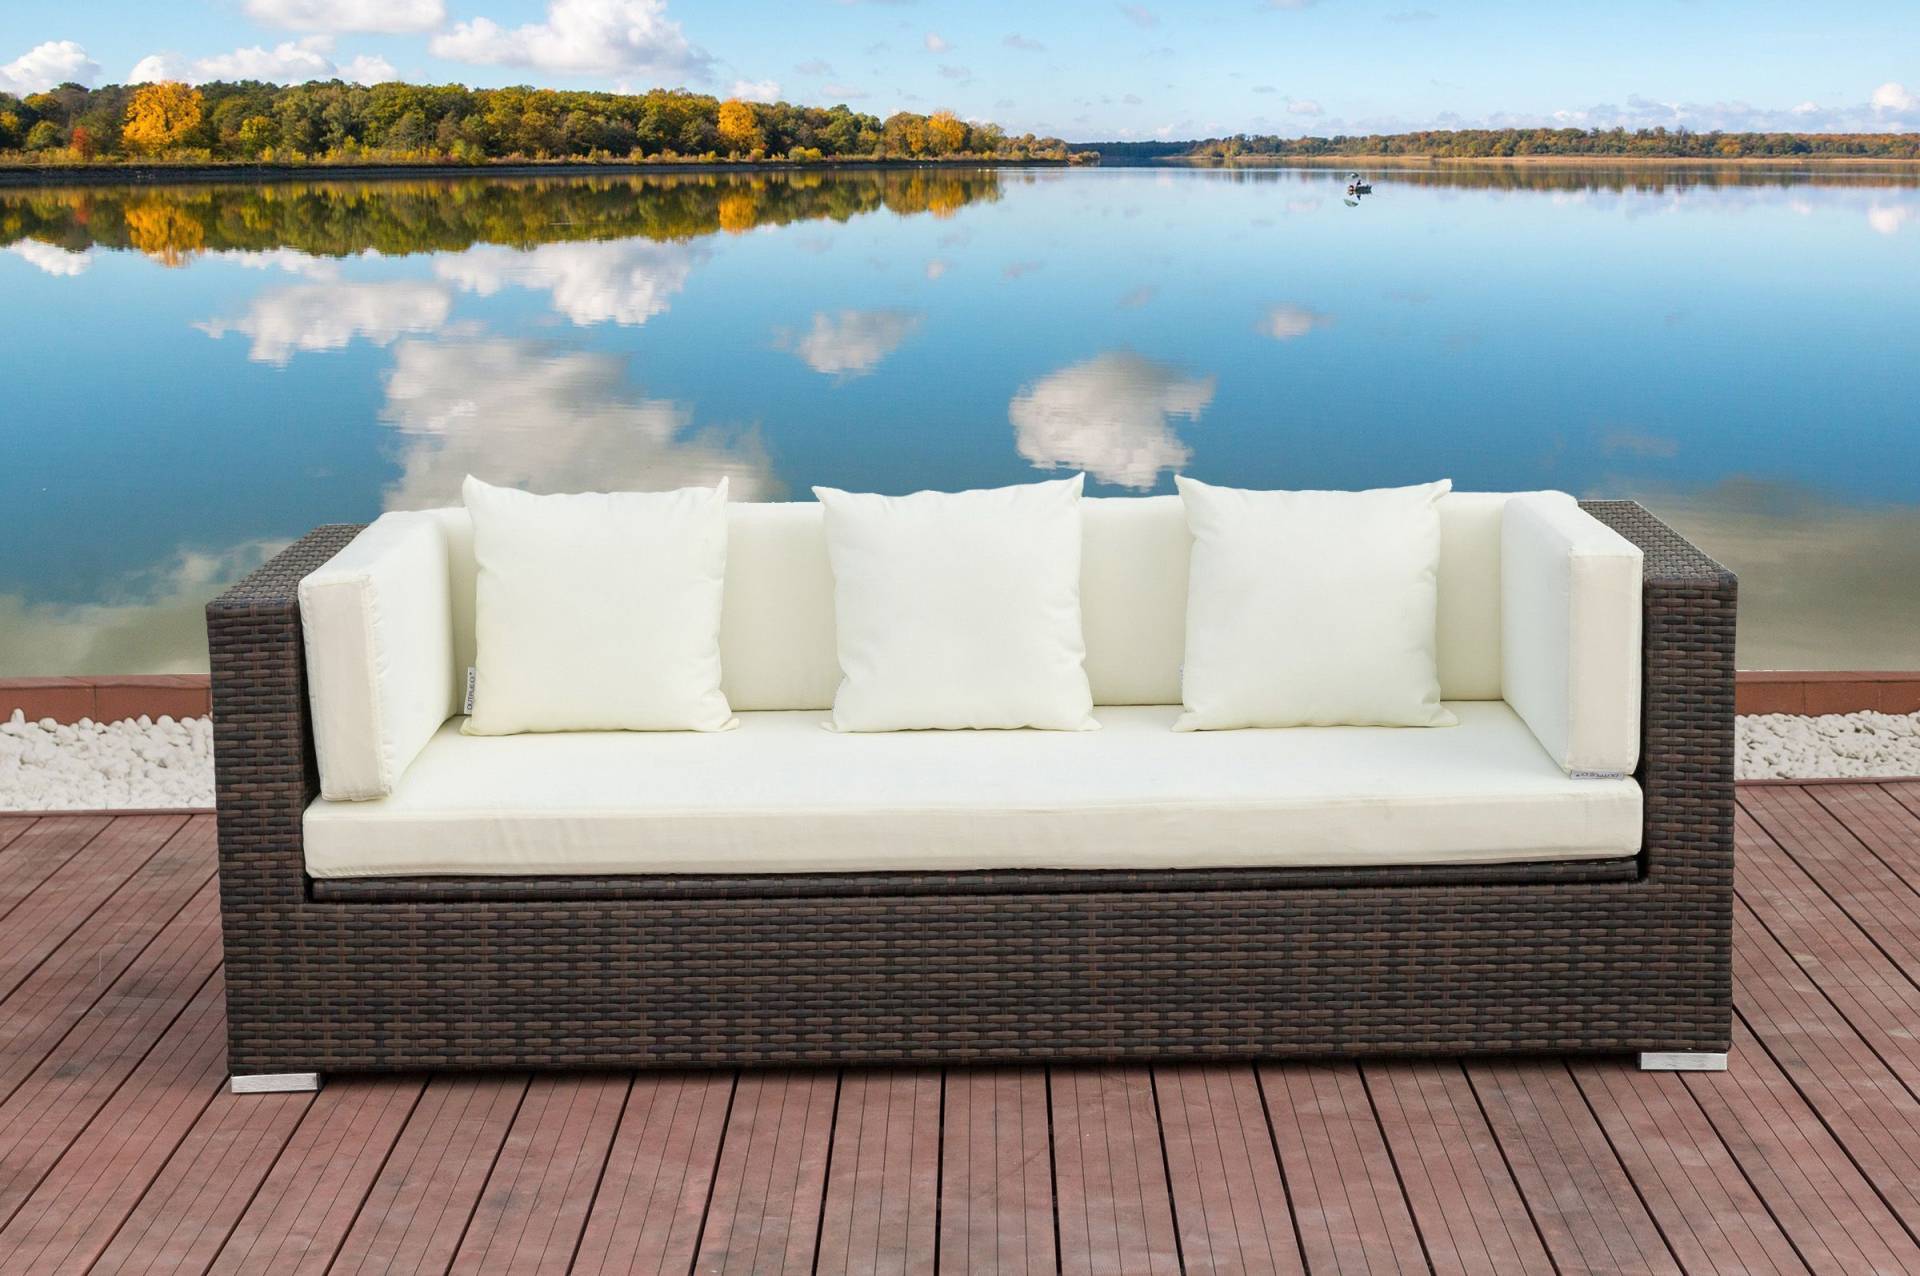 OUTFLEXX 3-Sitzer Sofa, braun marmoriert, Polyrattan, 210 x 85 x 70 cm, wasserfeste Kissenbox von OUTFLEXX